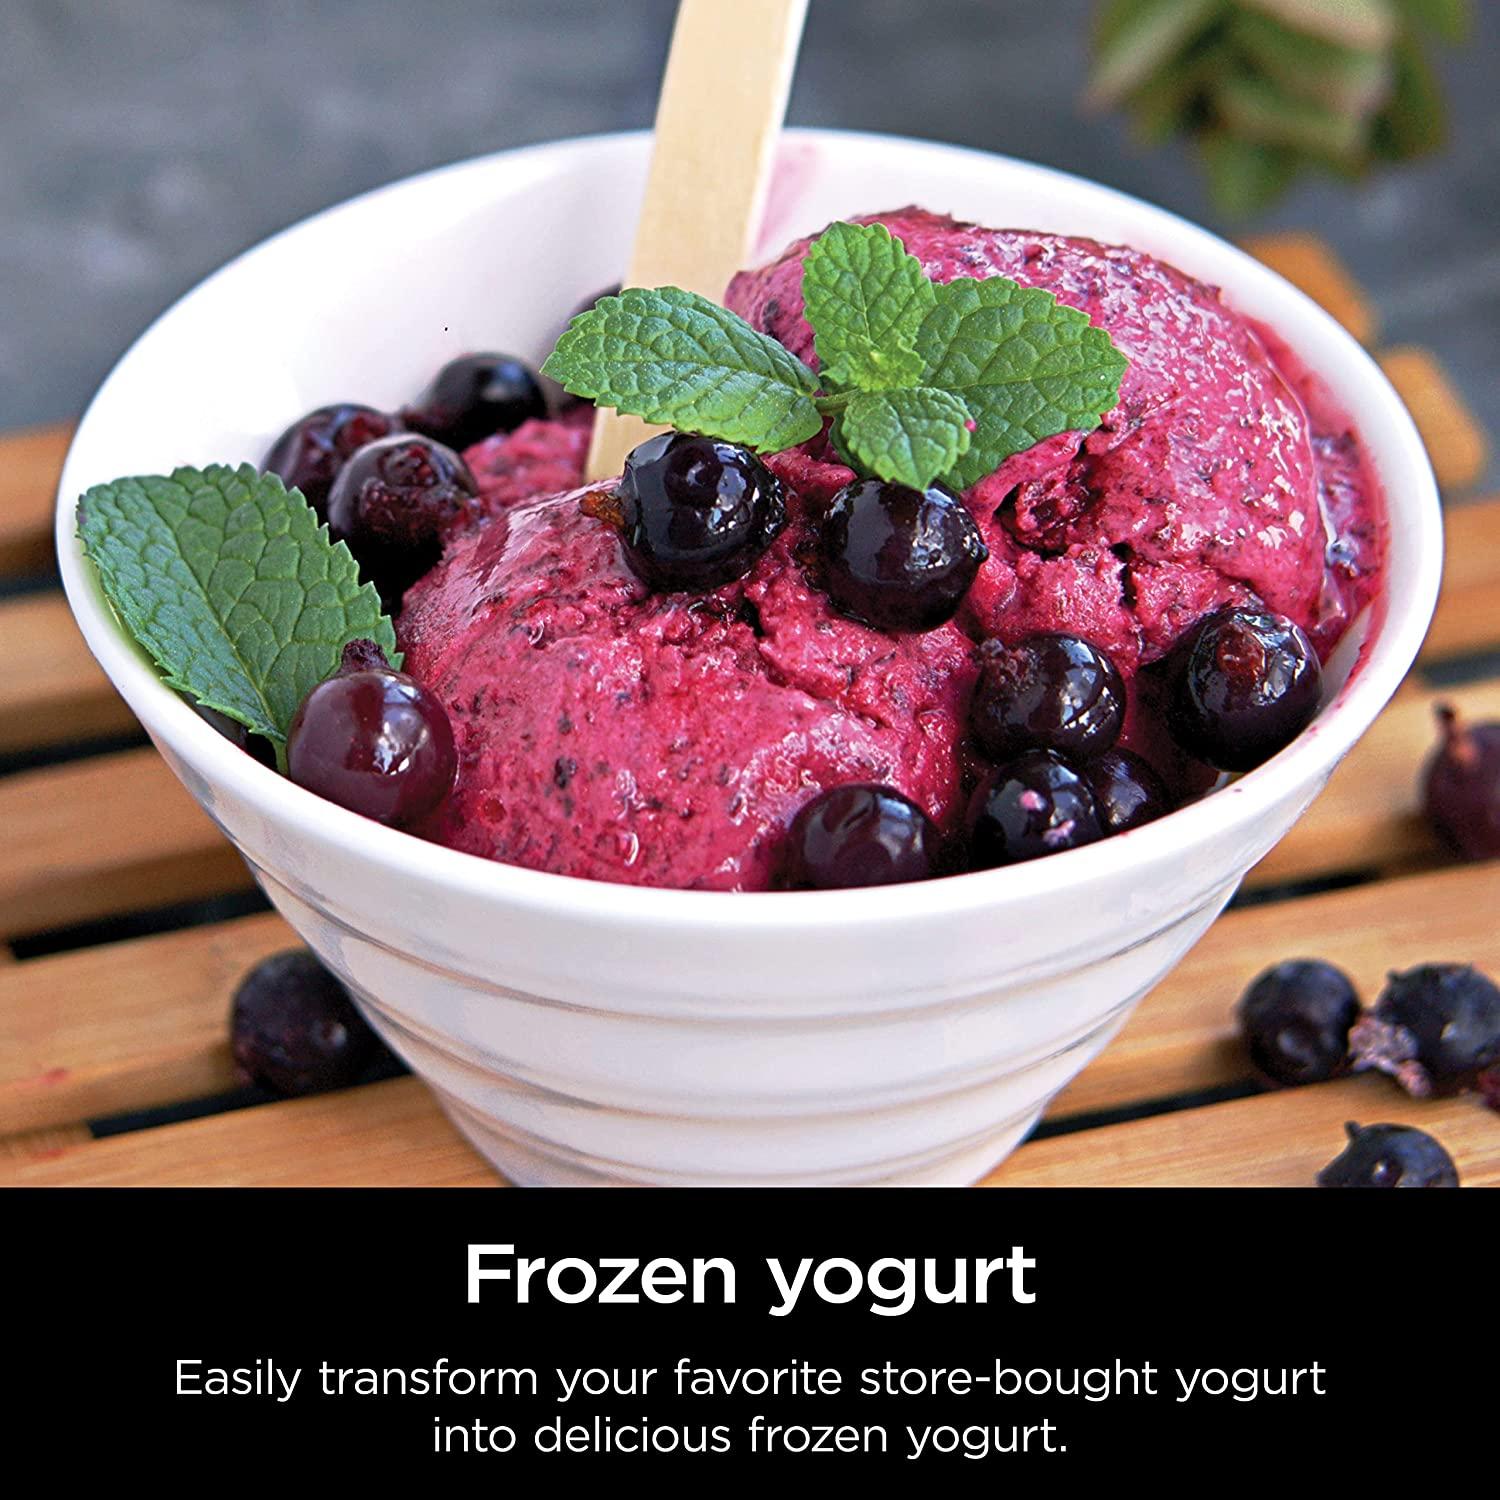 Ninja® CREAMi® Deluxe 11-in-1 Ice Cream & Frozen Treat Maker